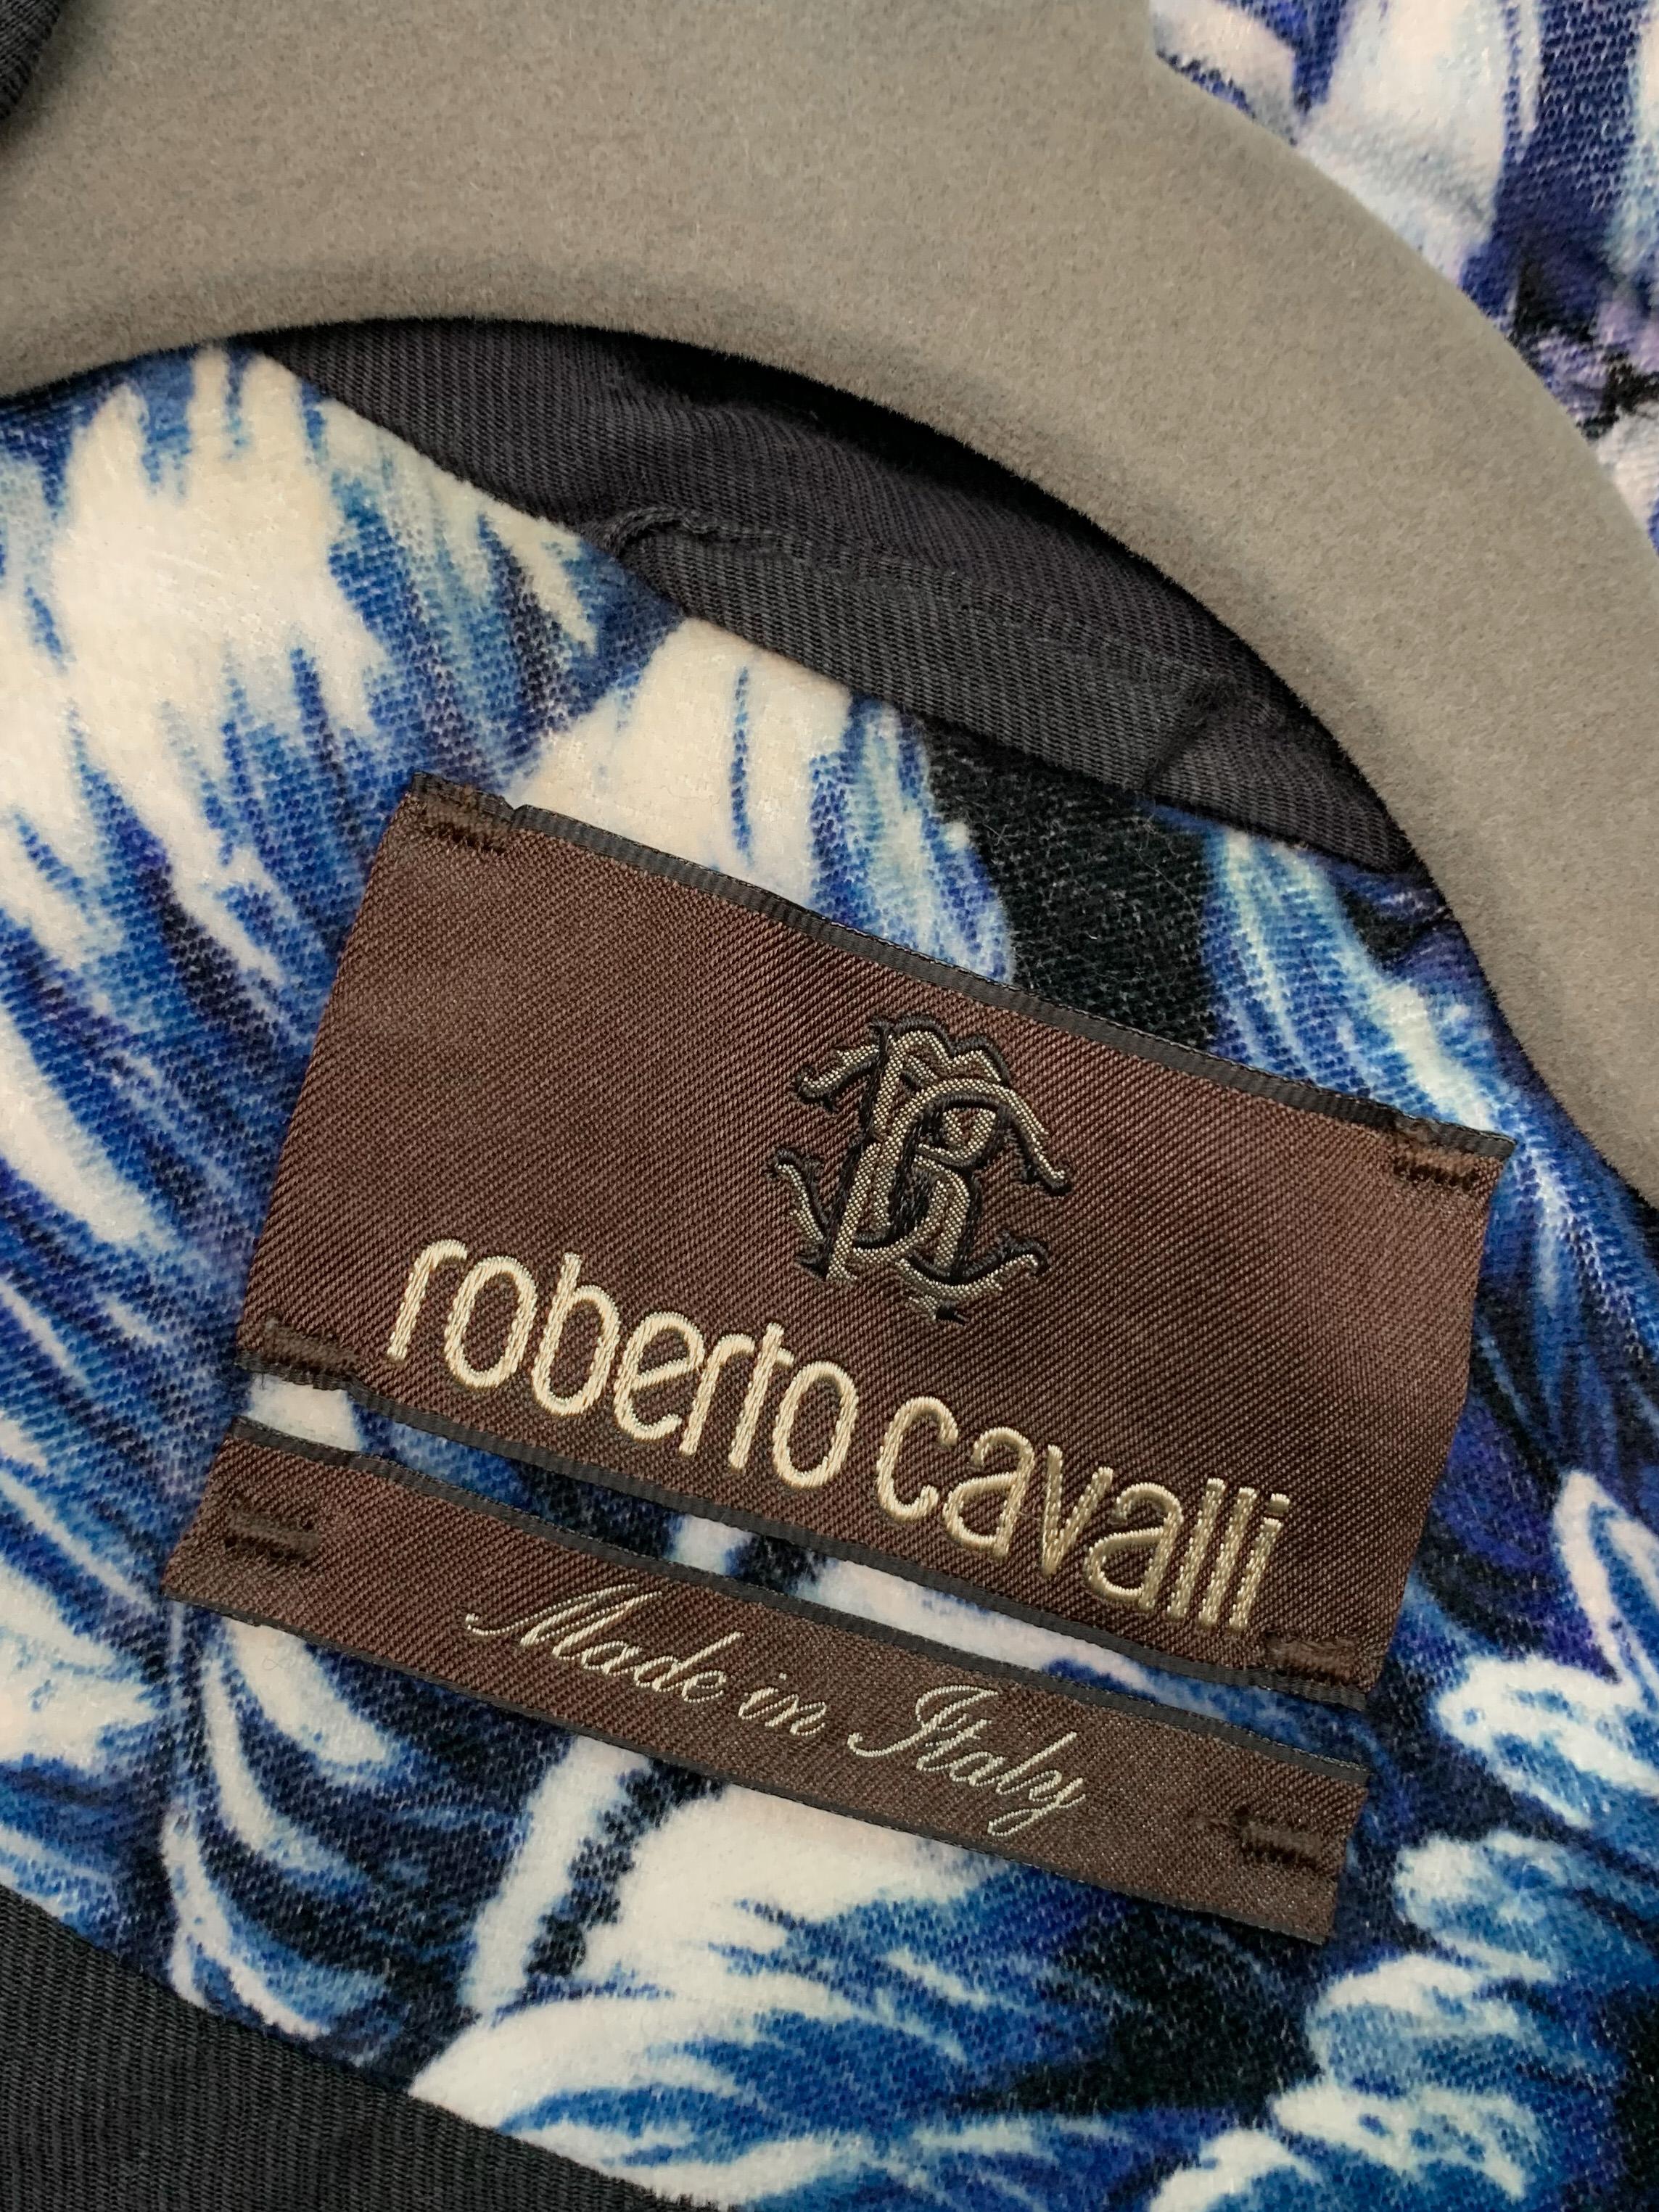 Roberto Cavalli 2016 Chinoiserie Velvet Jacket, Coat w/Baroque Porcelain Print  11